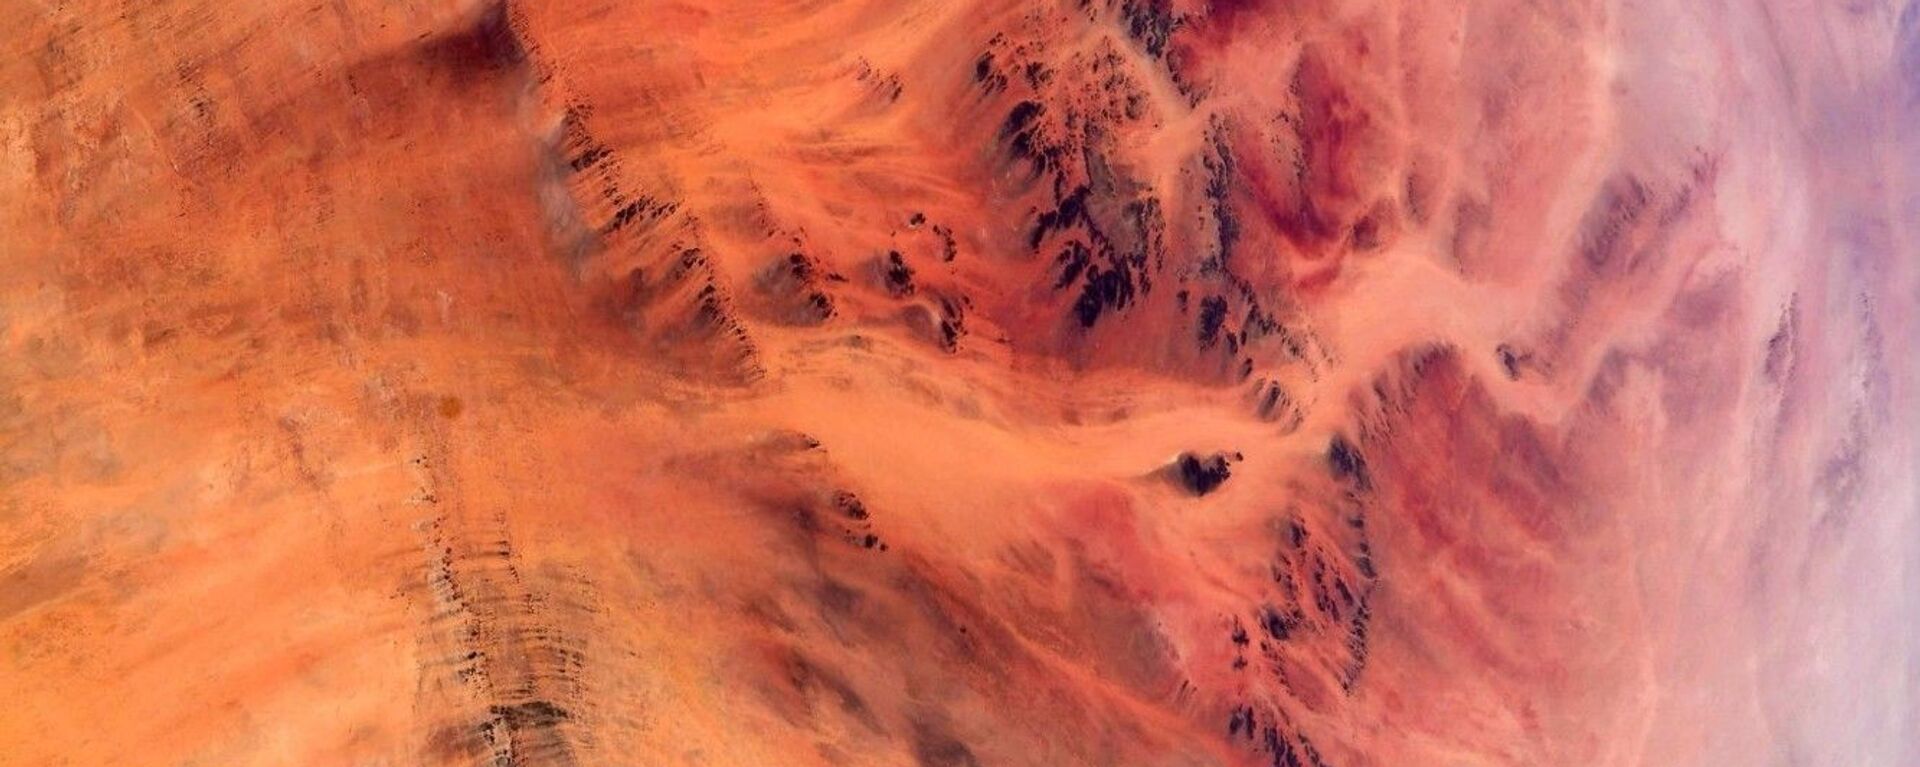 Вид на пустыню Сахара на фотографии астронавта ЕКА Томаса Песке - Sputnik International, 1920, 08.09.2021